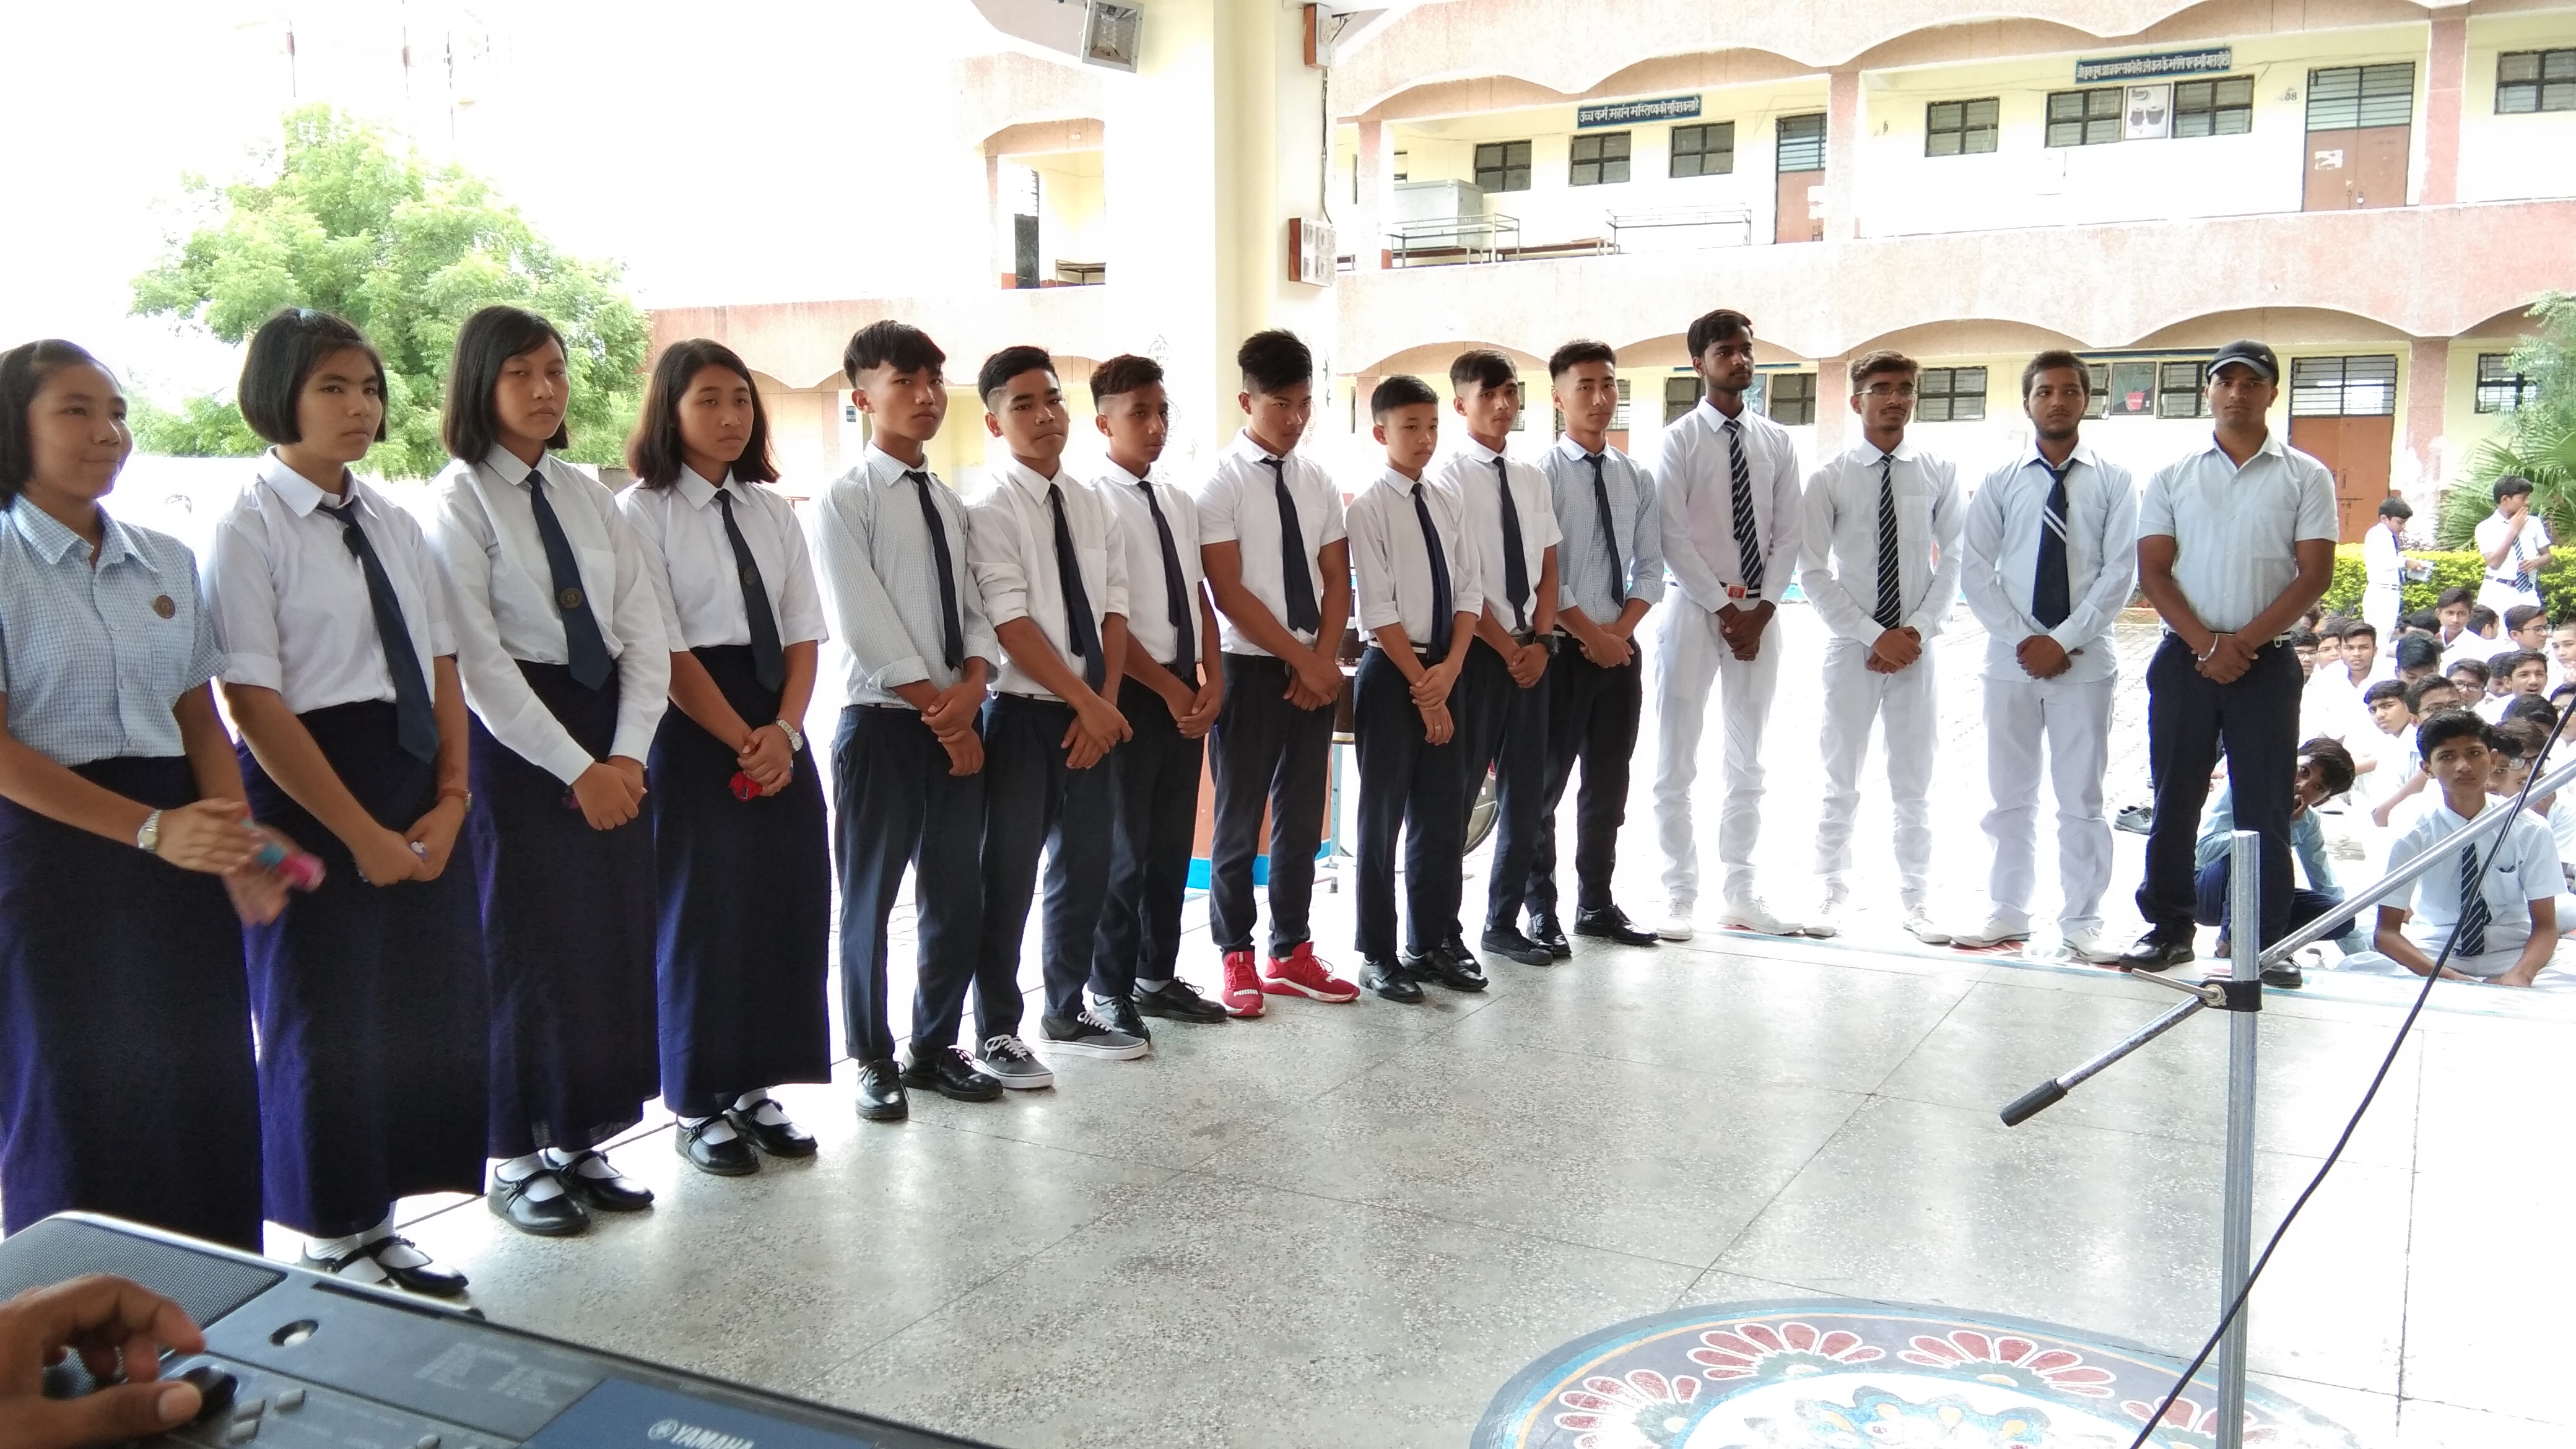 आपका स्वागत है जेएनवी से पलायन करने वाले छात्रों का मणिपुर वेस्ट इम्फाल में प्रवेश